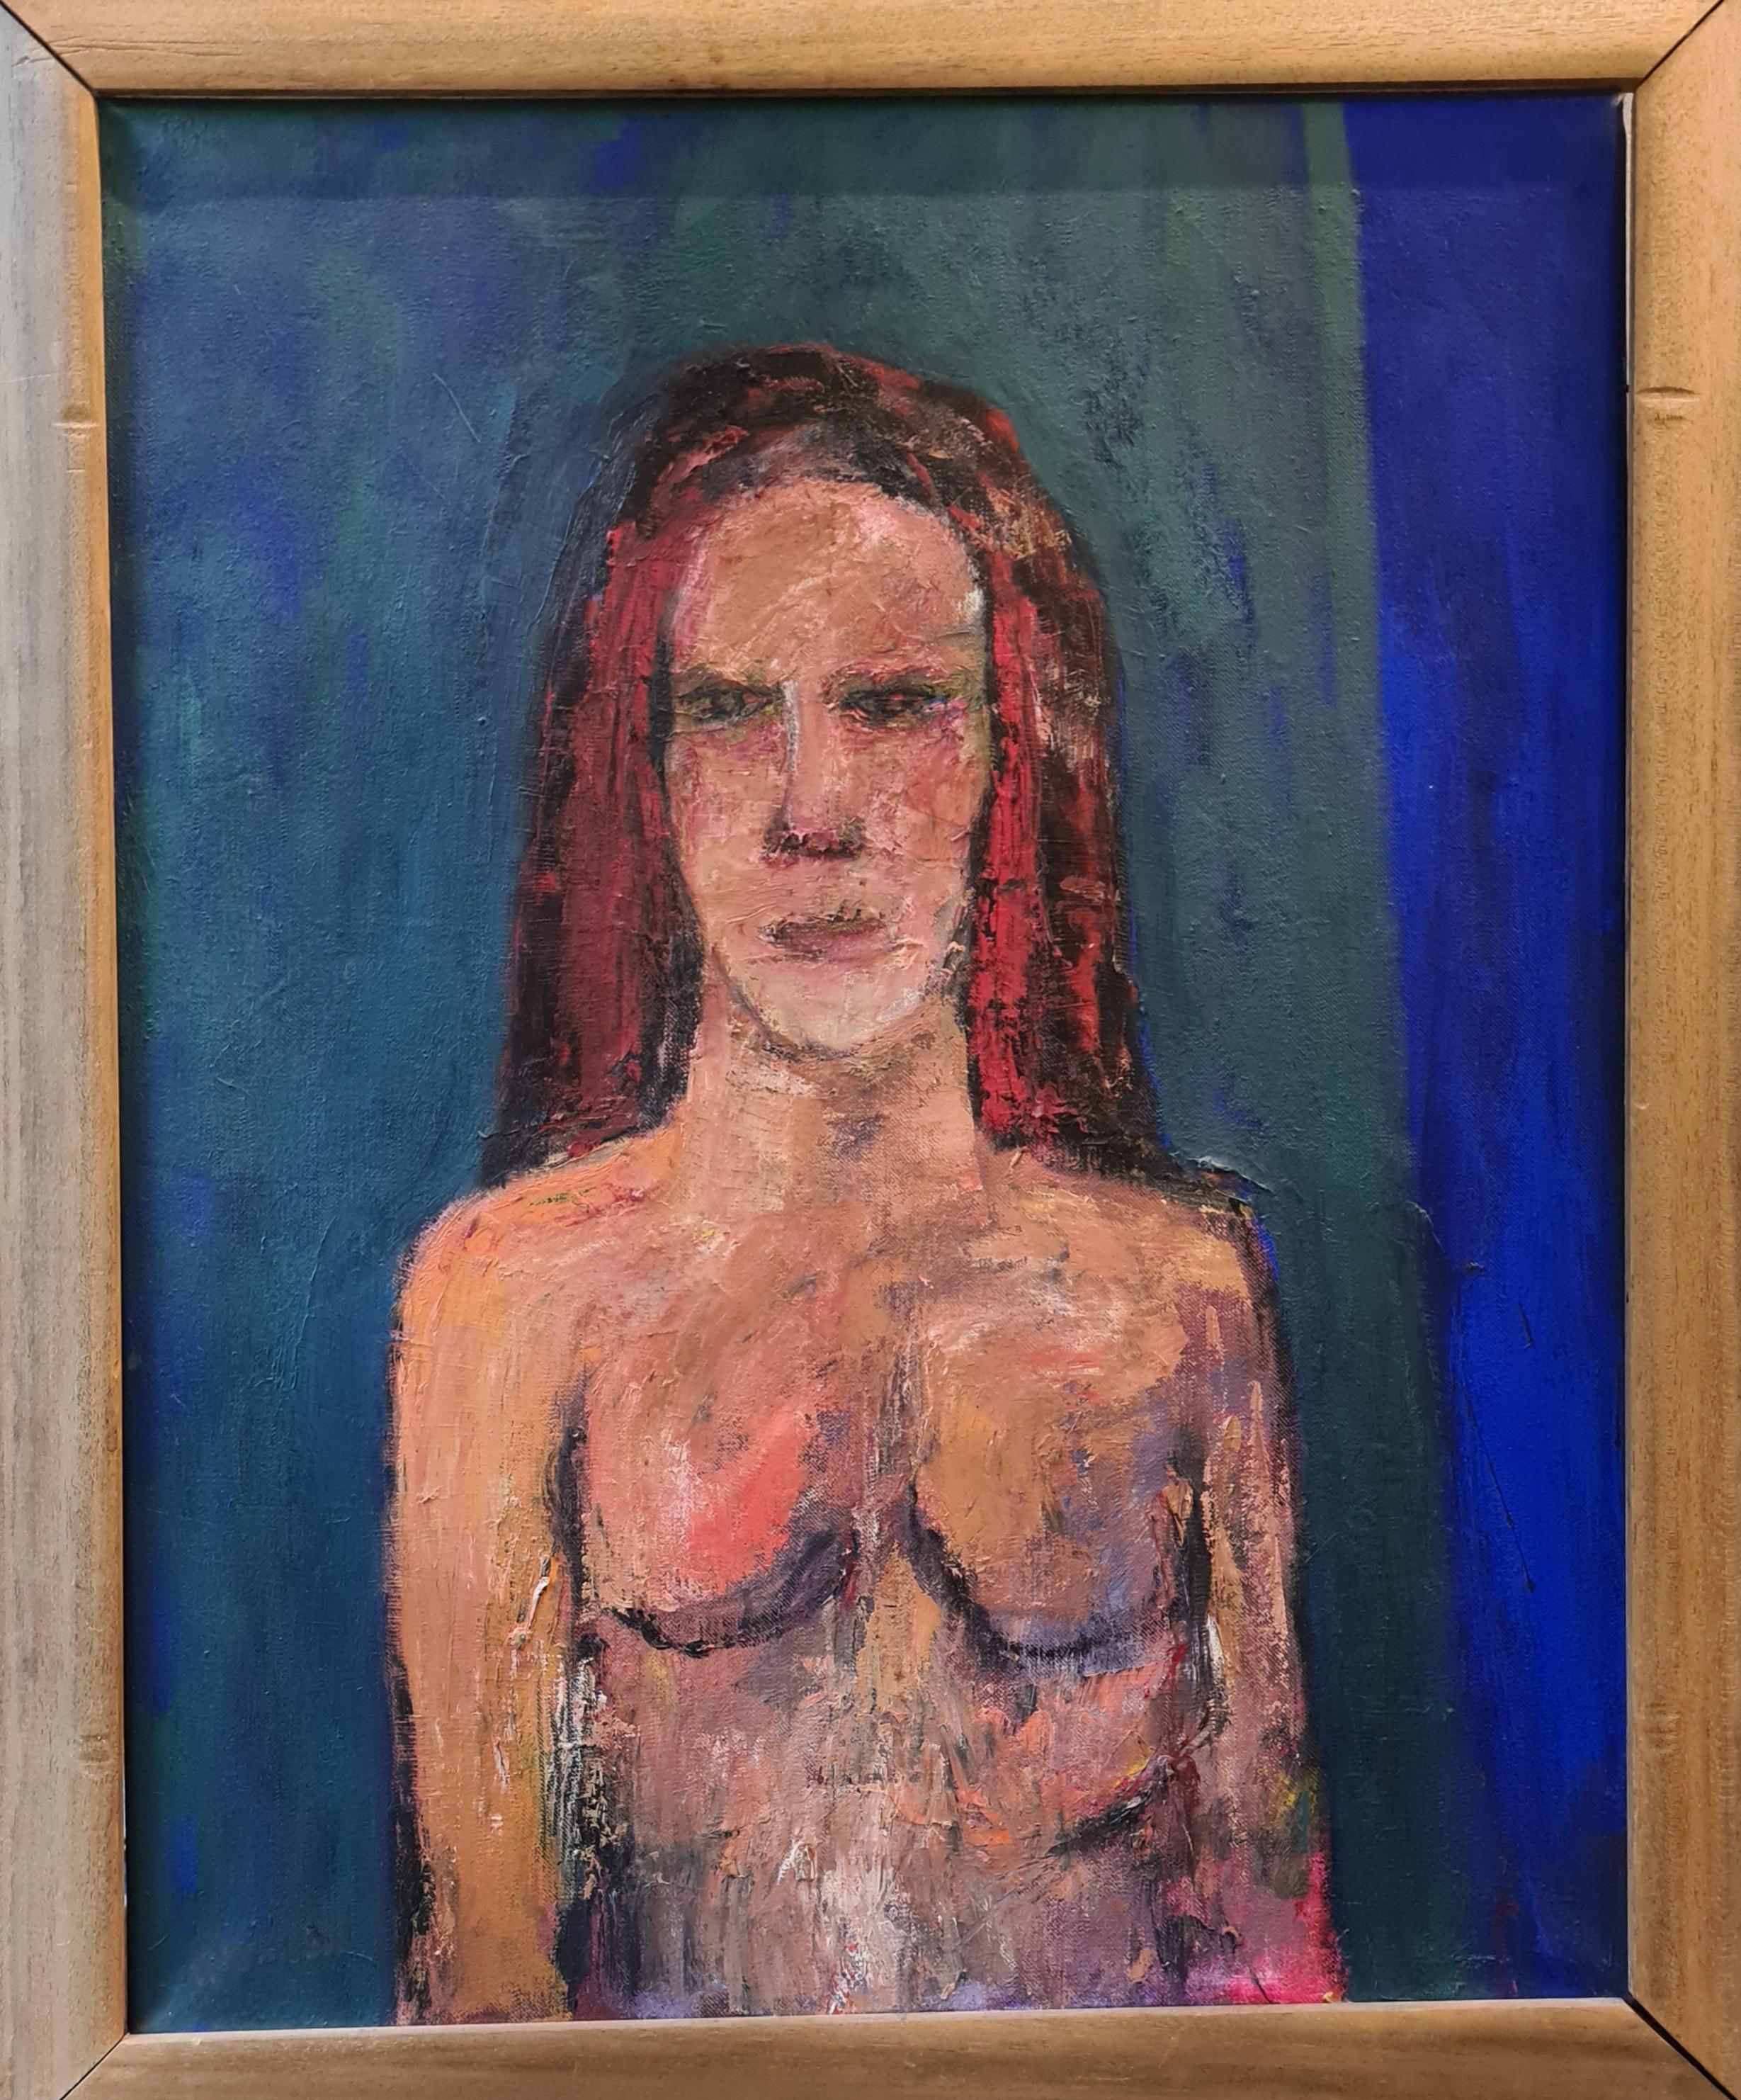 Portrait de femme nue expressionniste, « Le rideau vert », huile sur toile